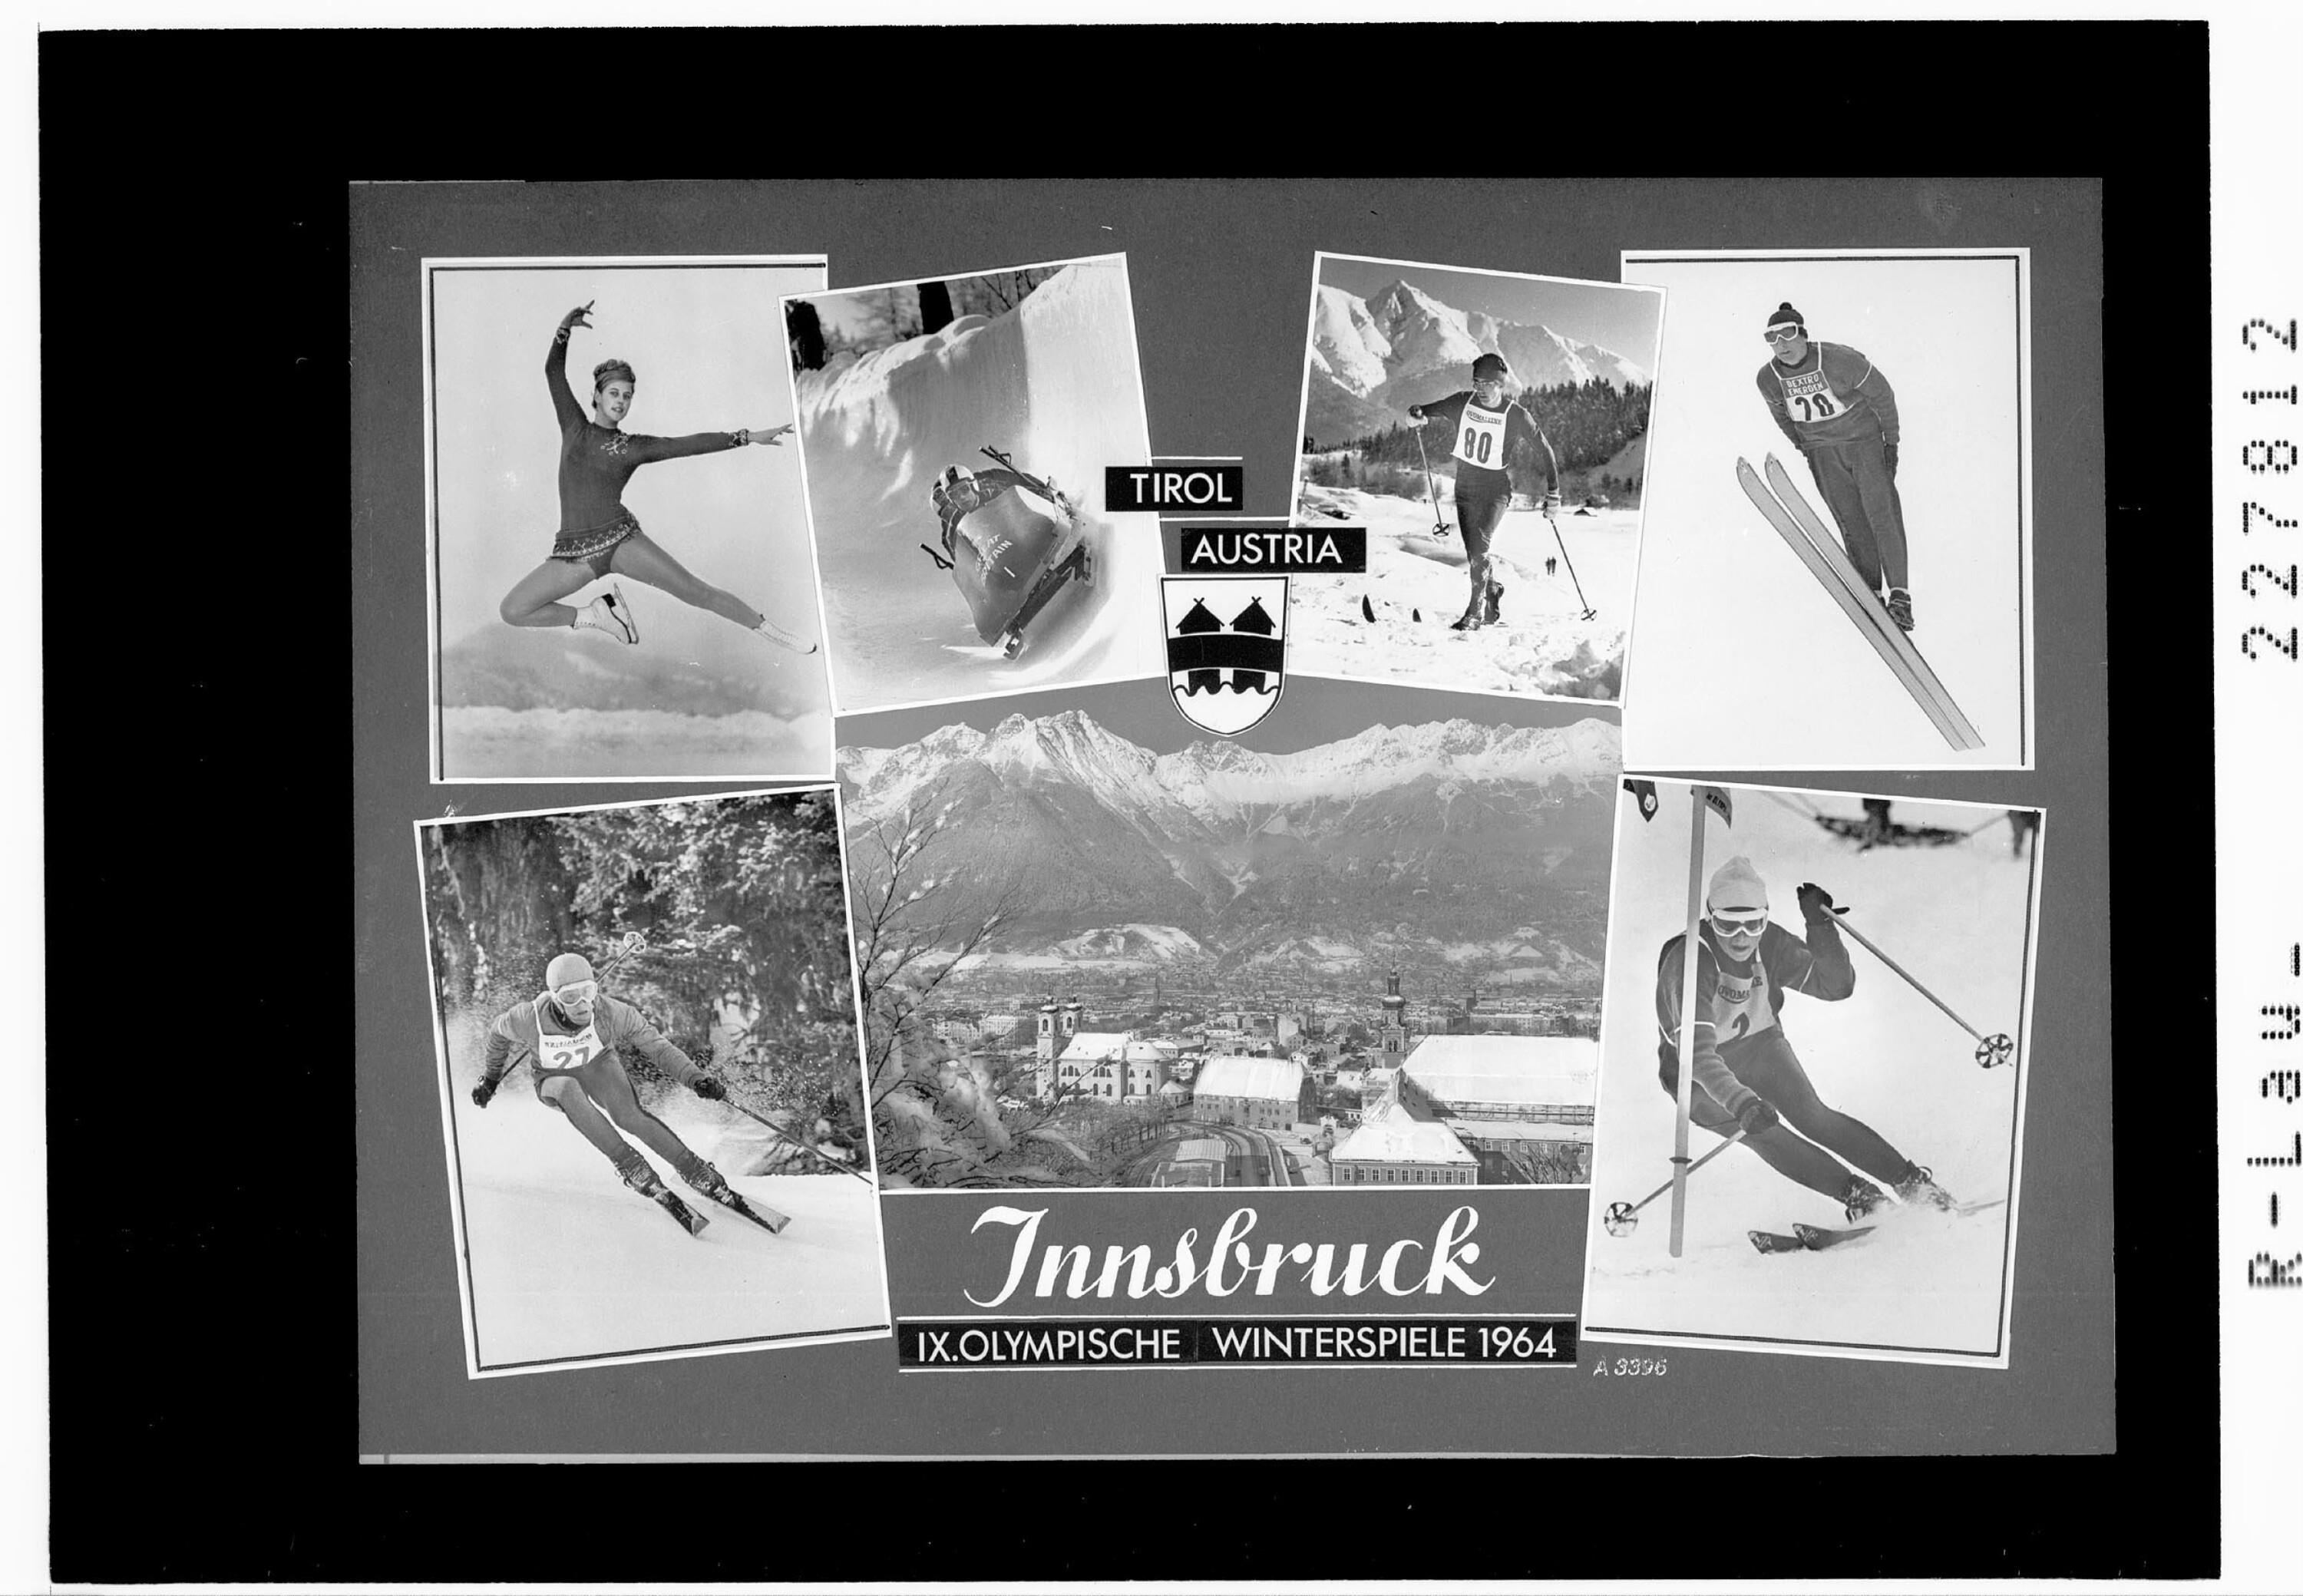 Innsbruck / IX Olympische Winterspiele 1964></div>


    <hr>
    <div class=